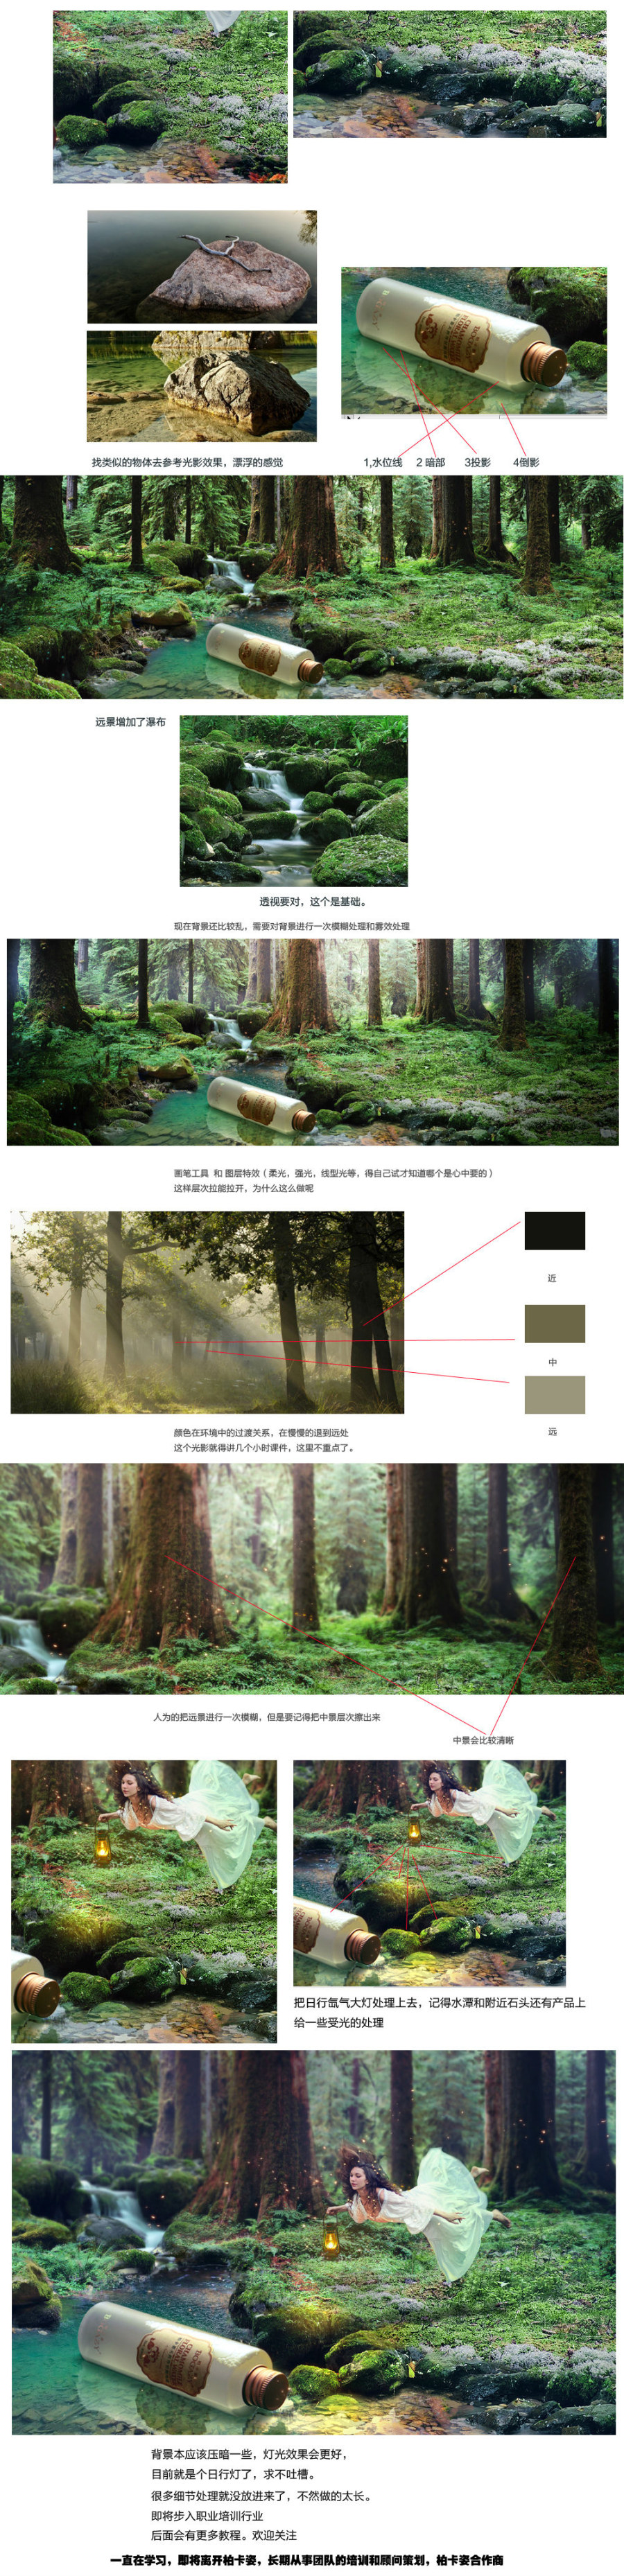 photoshop合成漂亮的森林梦幻场景